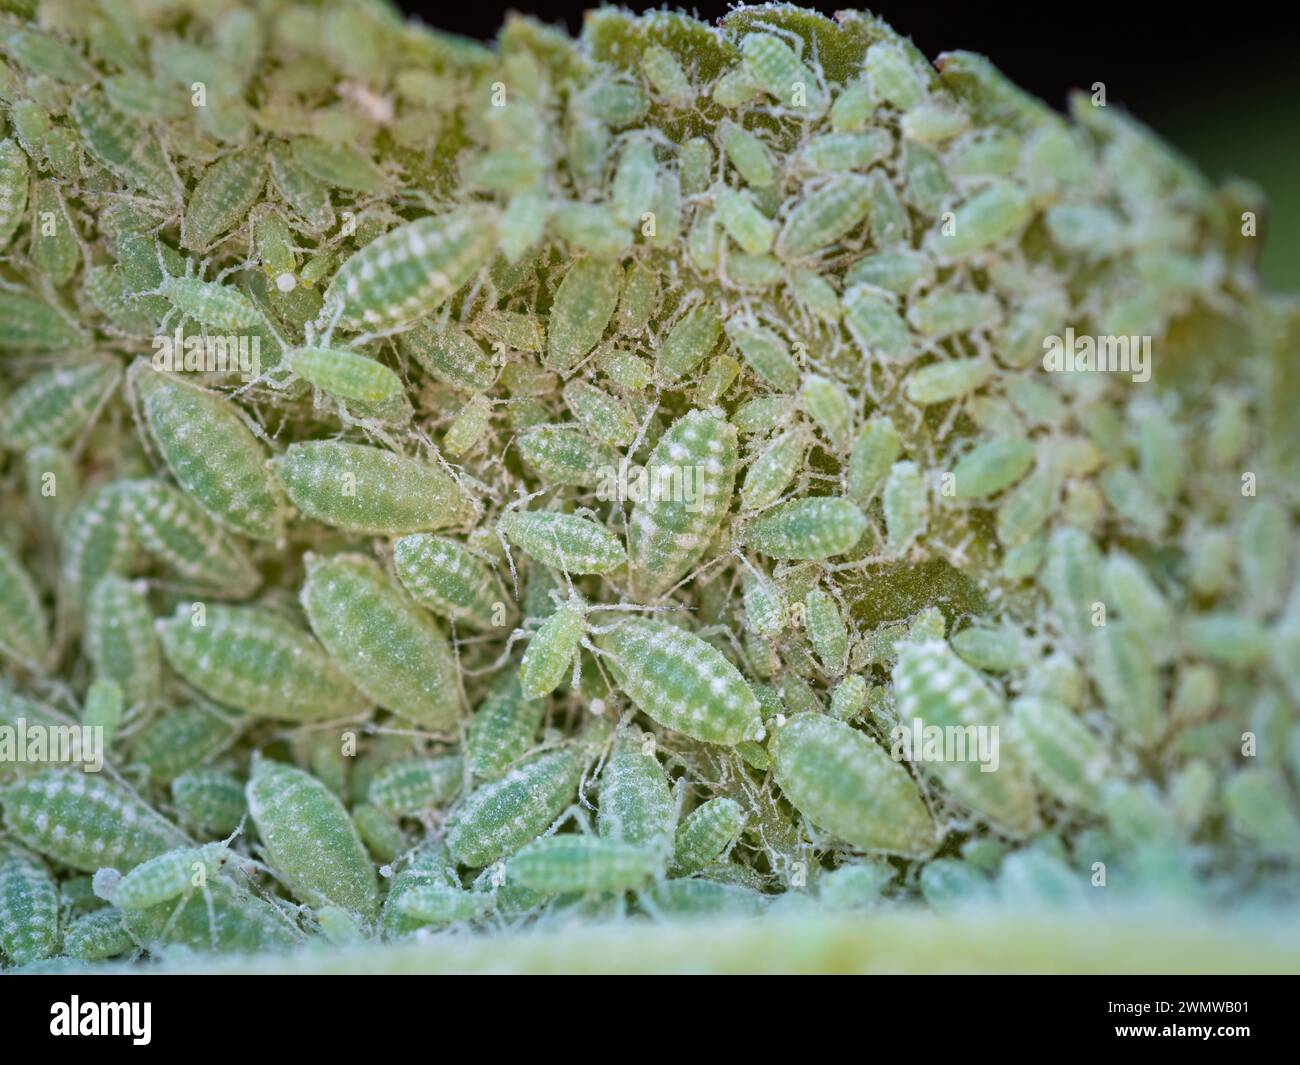 Primer plano de la colonia de áfidos - Hemiptera Aphididae - en hoja de ciruela. Foto macro de la plaga de insectos - piojos de plantas, mosca verde, mosca negra o mosca blanca - jugo de succión Foto de stock